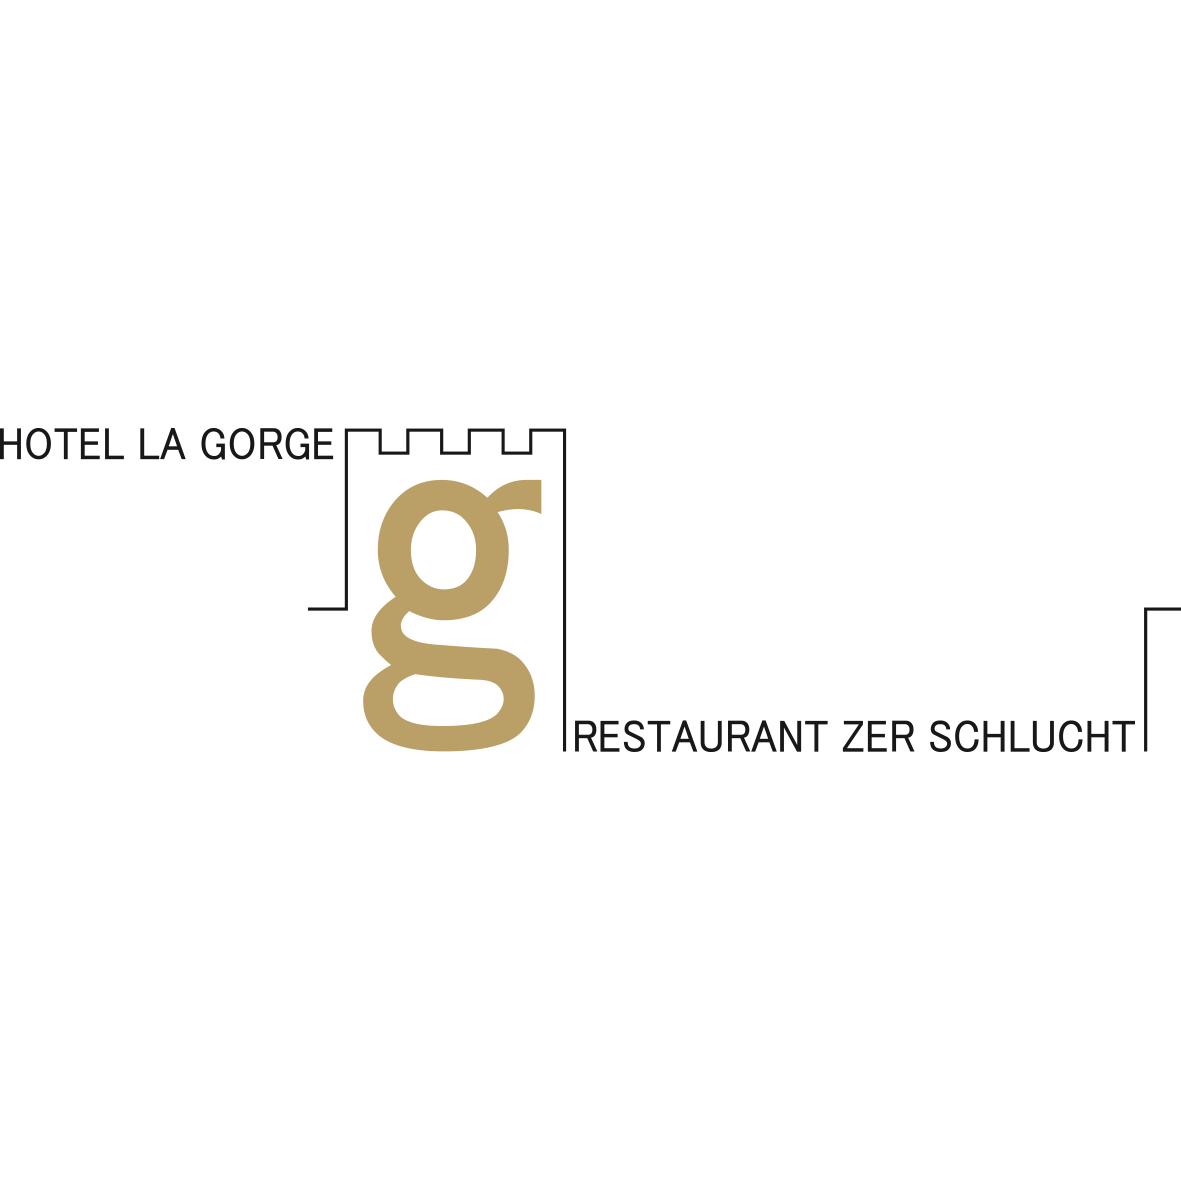 Hotel La Gorge & Restaurant Zer Schlucht Logo